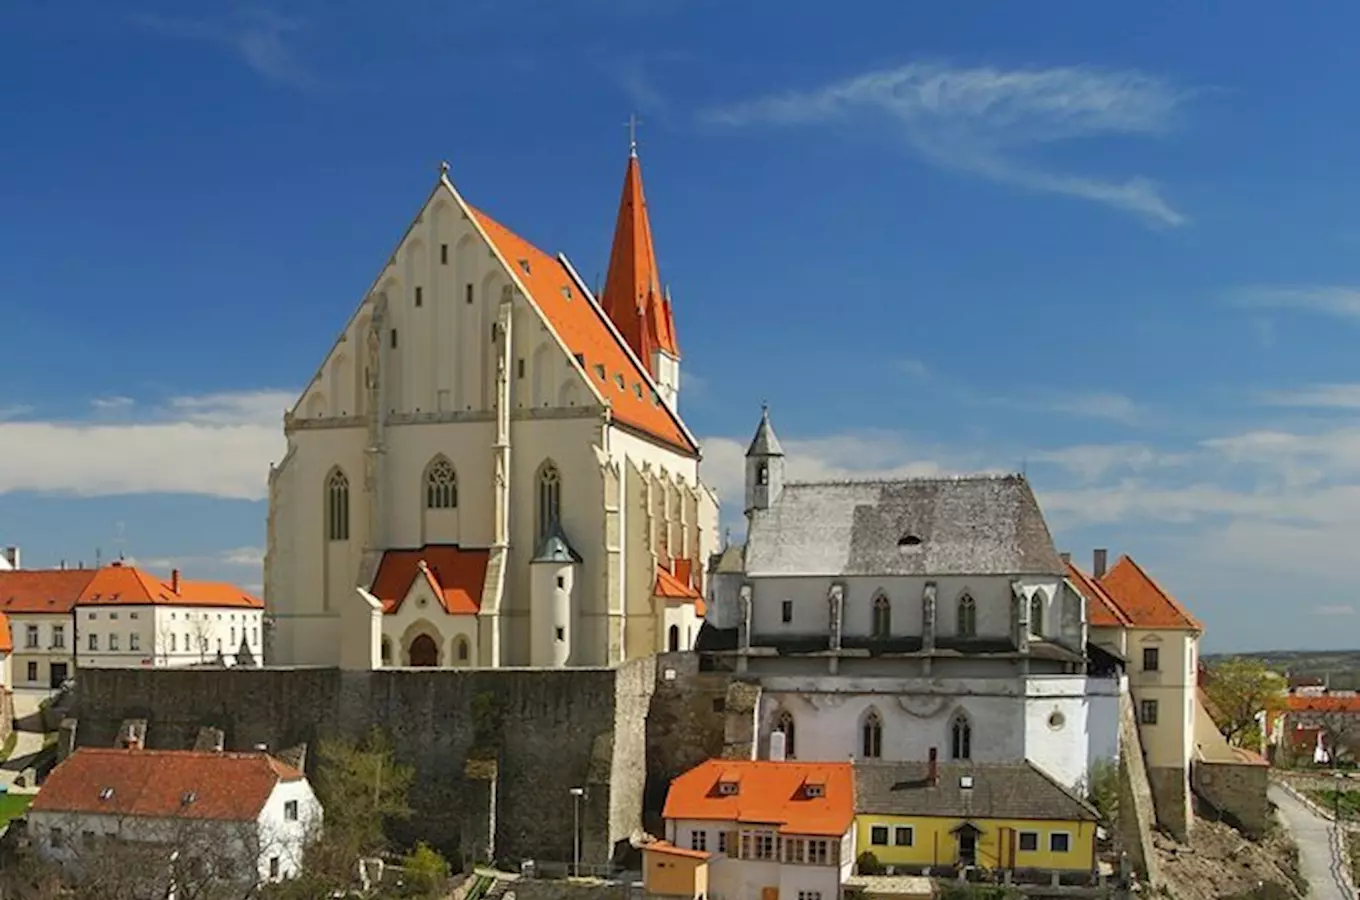 Chrám svatého Mikuláše, Znojmo - gotický chrám zbudovaný na románských základech s bohatou vnitrní gotickou i barokní výzdobou.